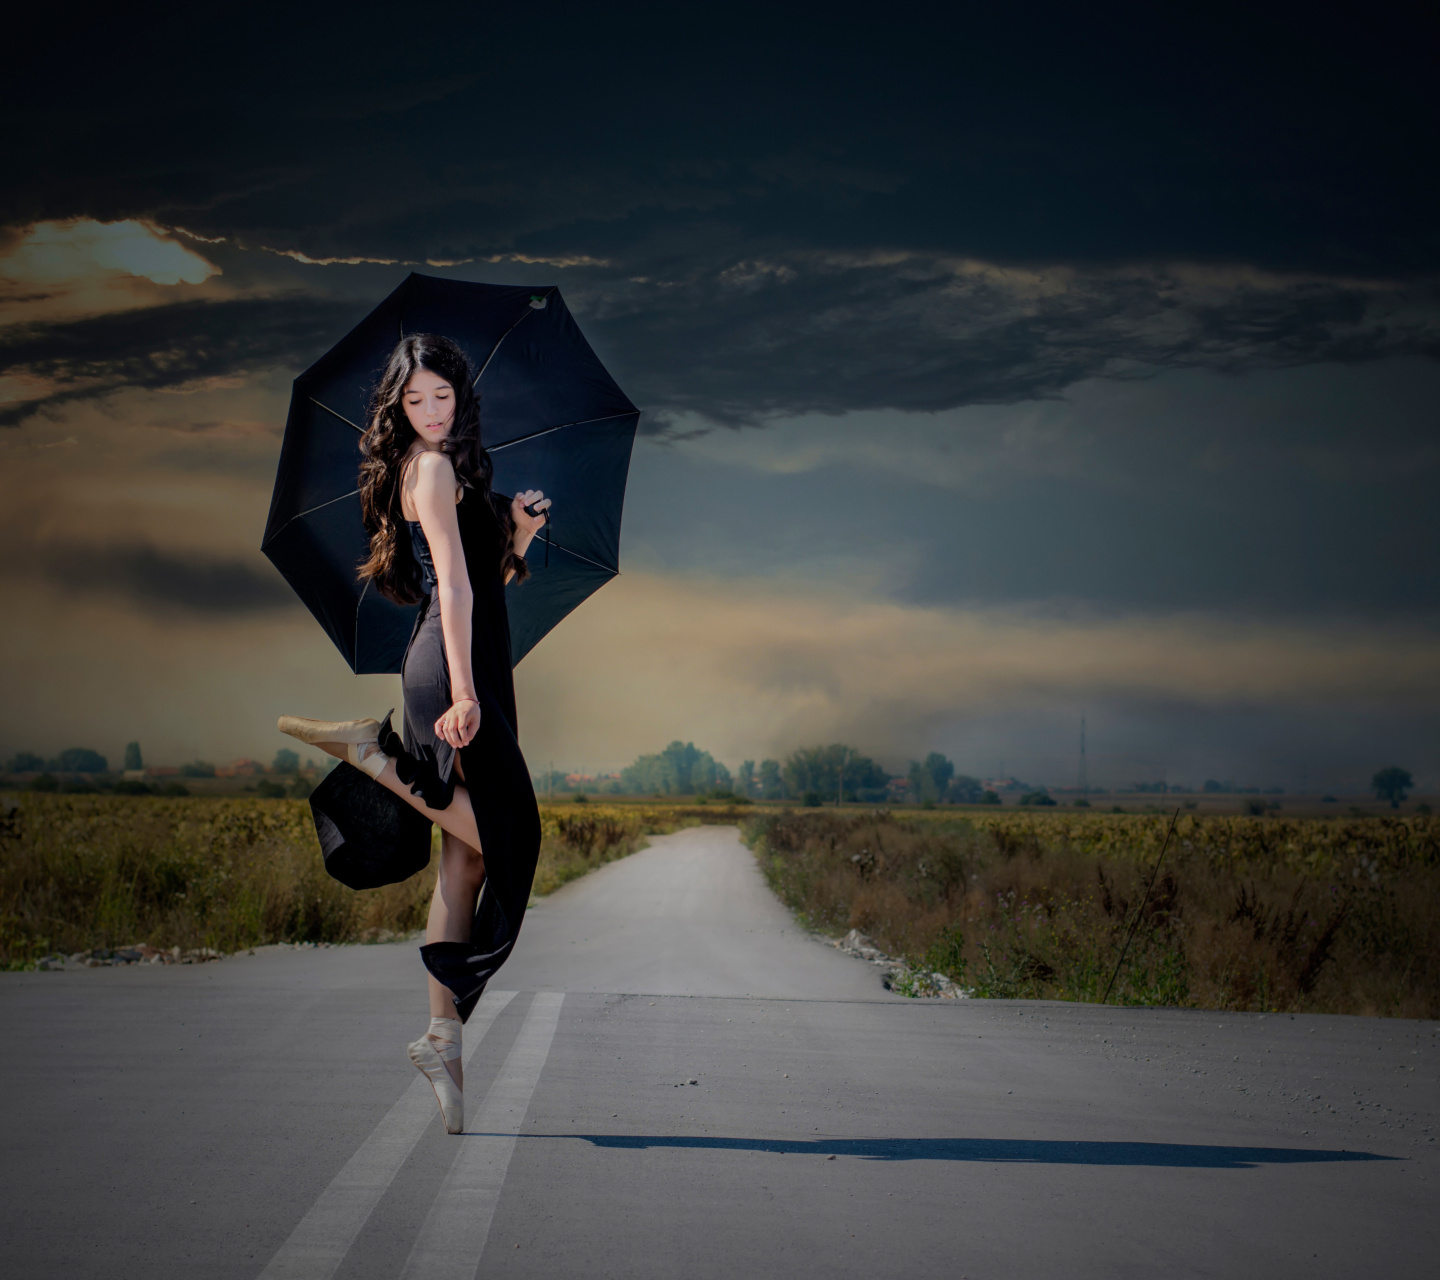 Das Ballerina with black umbrella Wallpaper 1440x1280